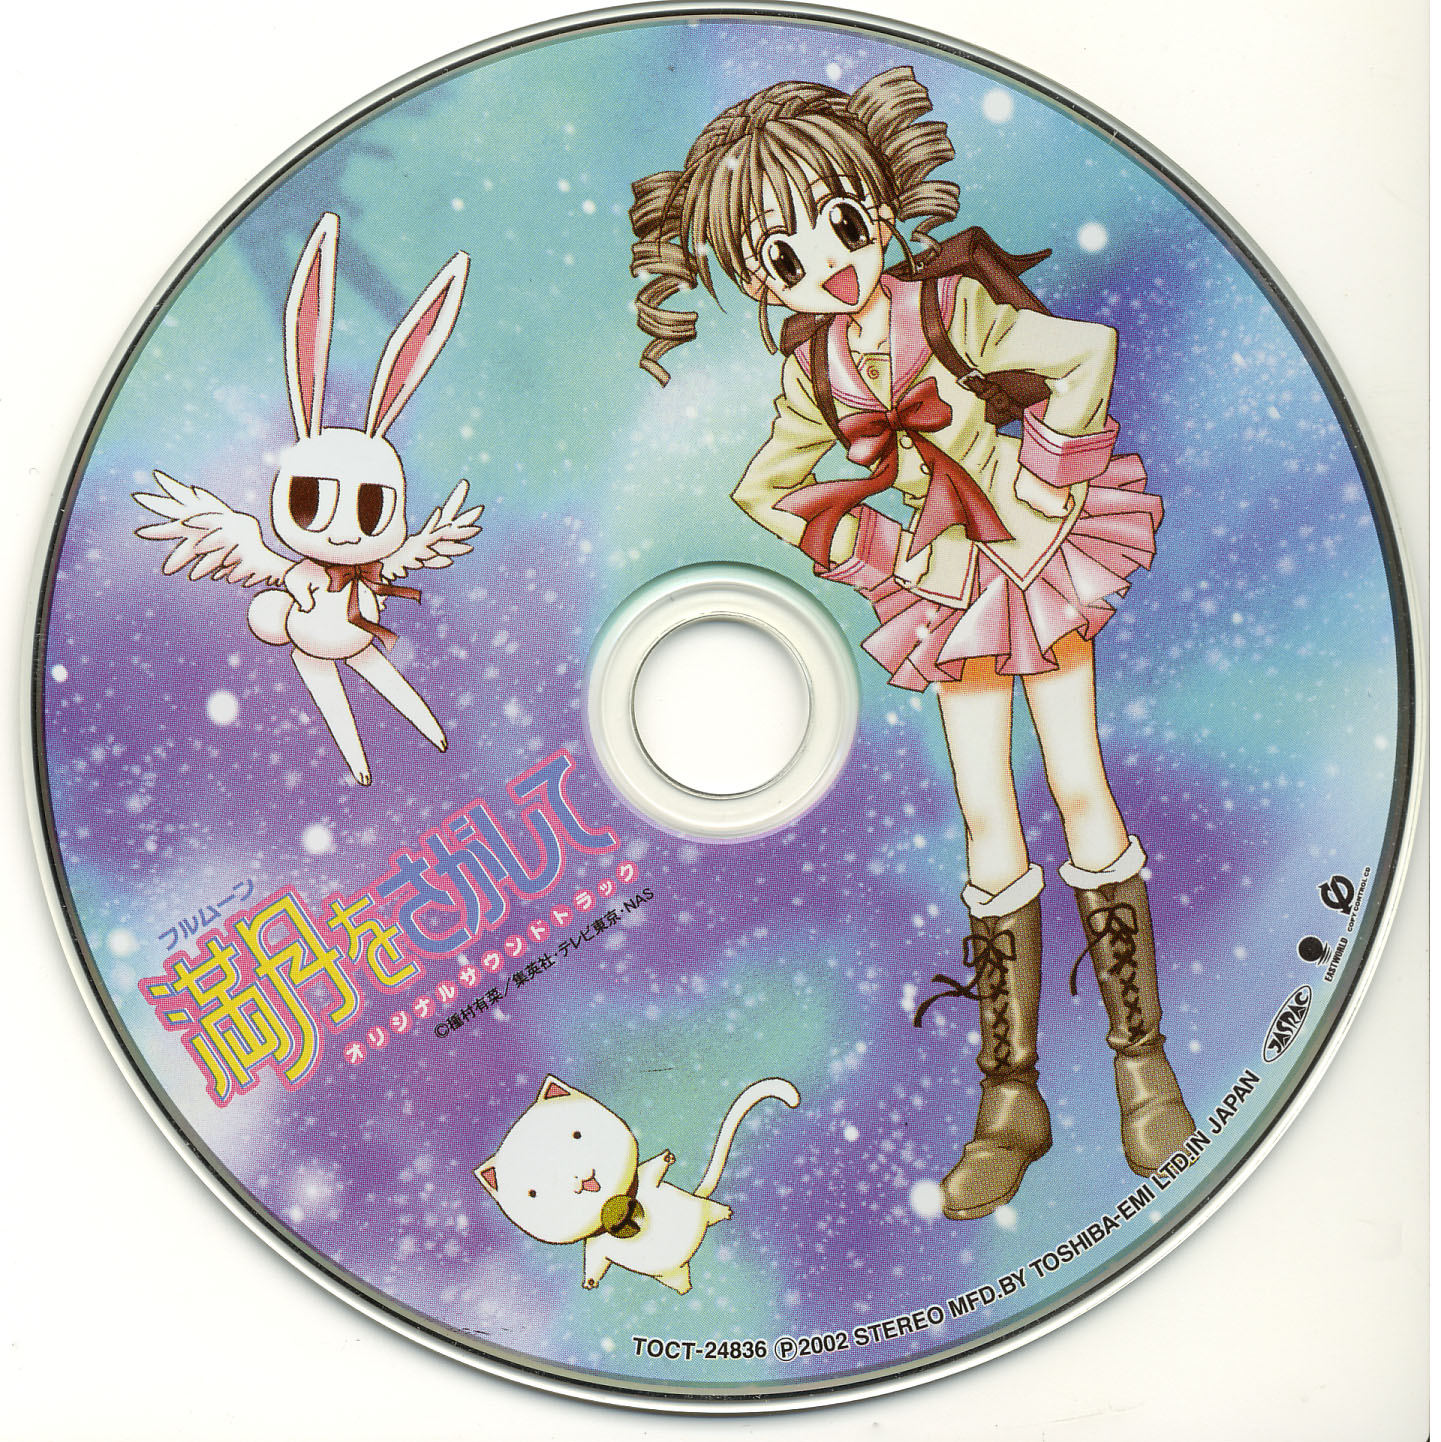 Release “満月をさがして オリジナル・サウンドトラック” by 椎名KAY太